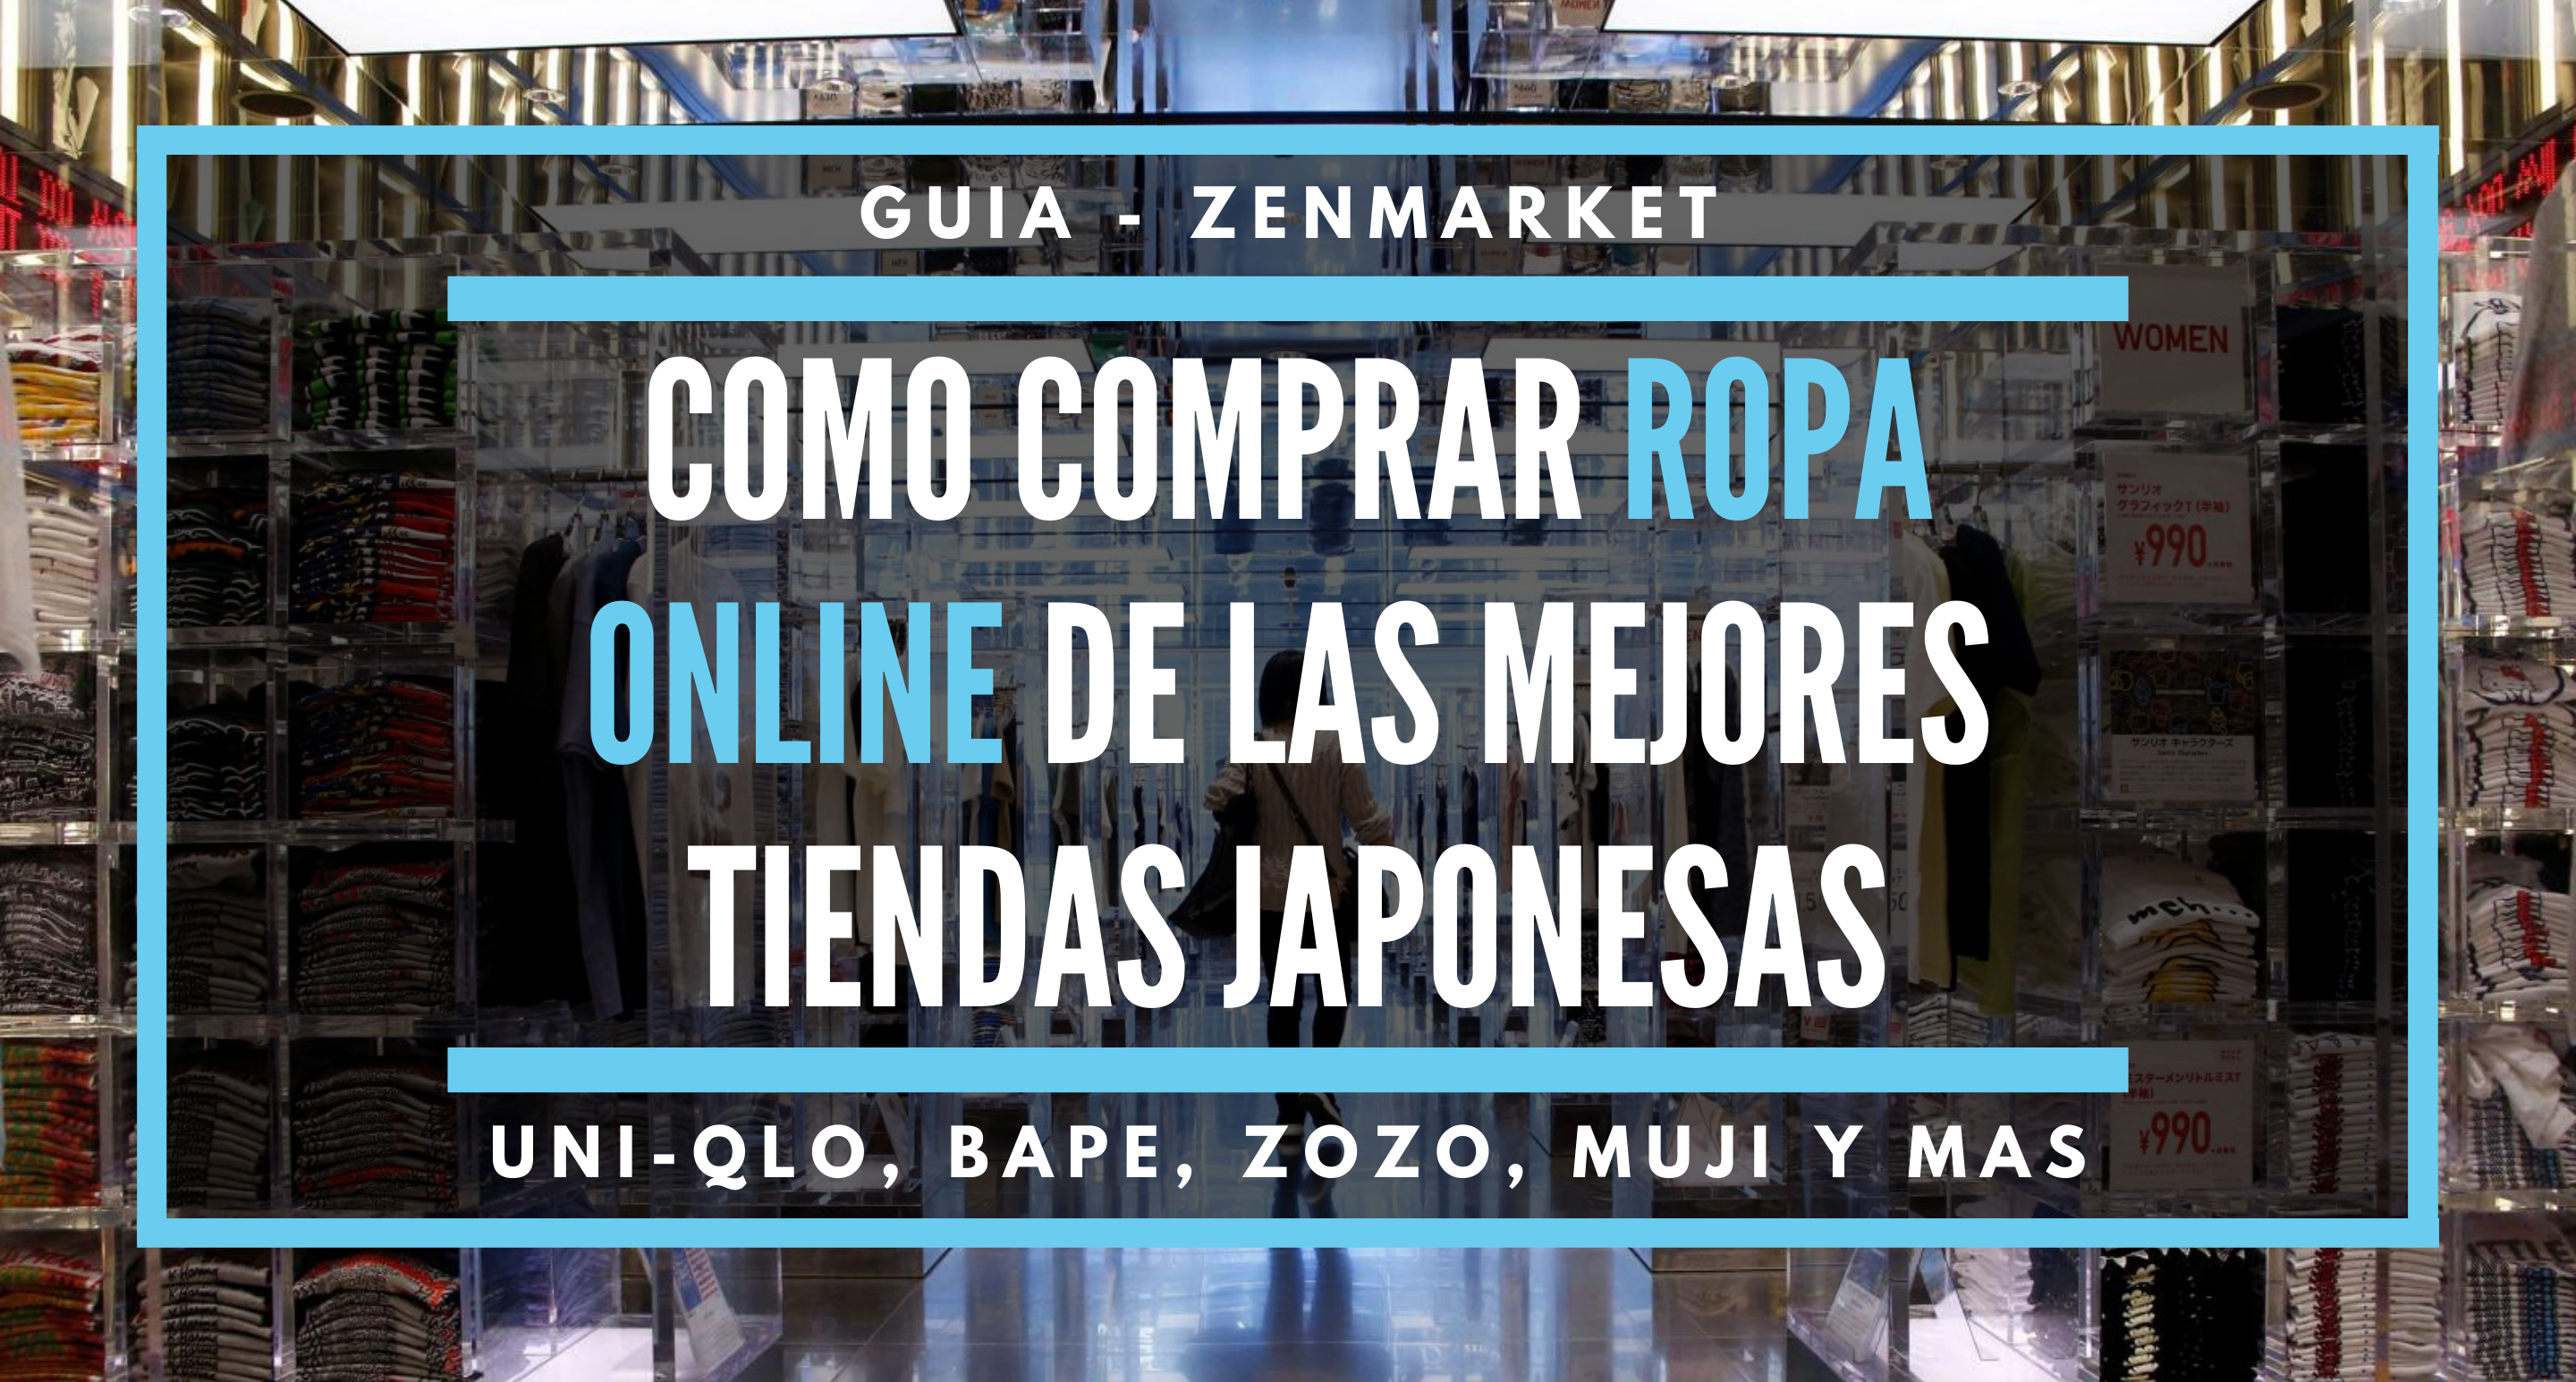 De confianza Original cura Cómo Comprar Ropa Online de las Mejores Tiendas Japonesas - ZenMarket.jp -  Servicio proxy y de compras a Japón